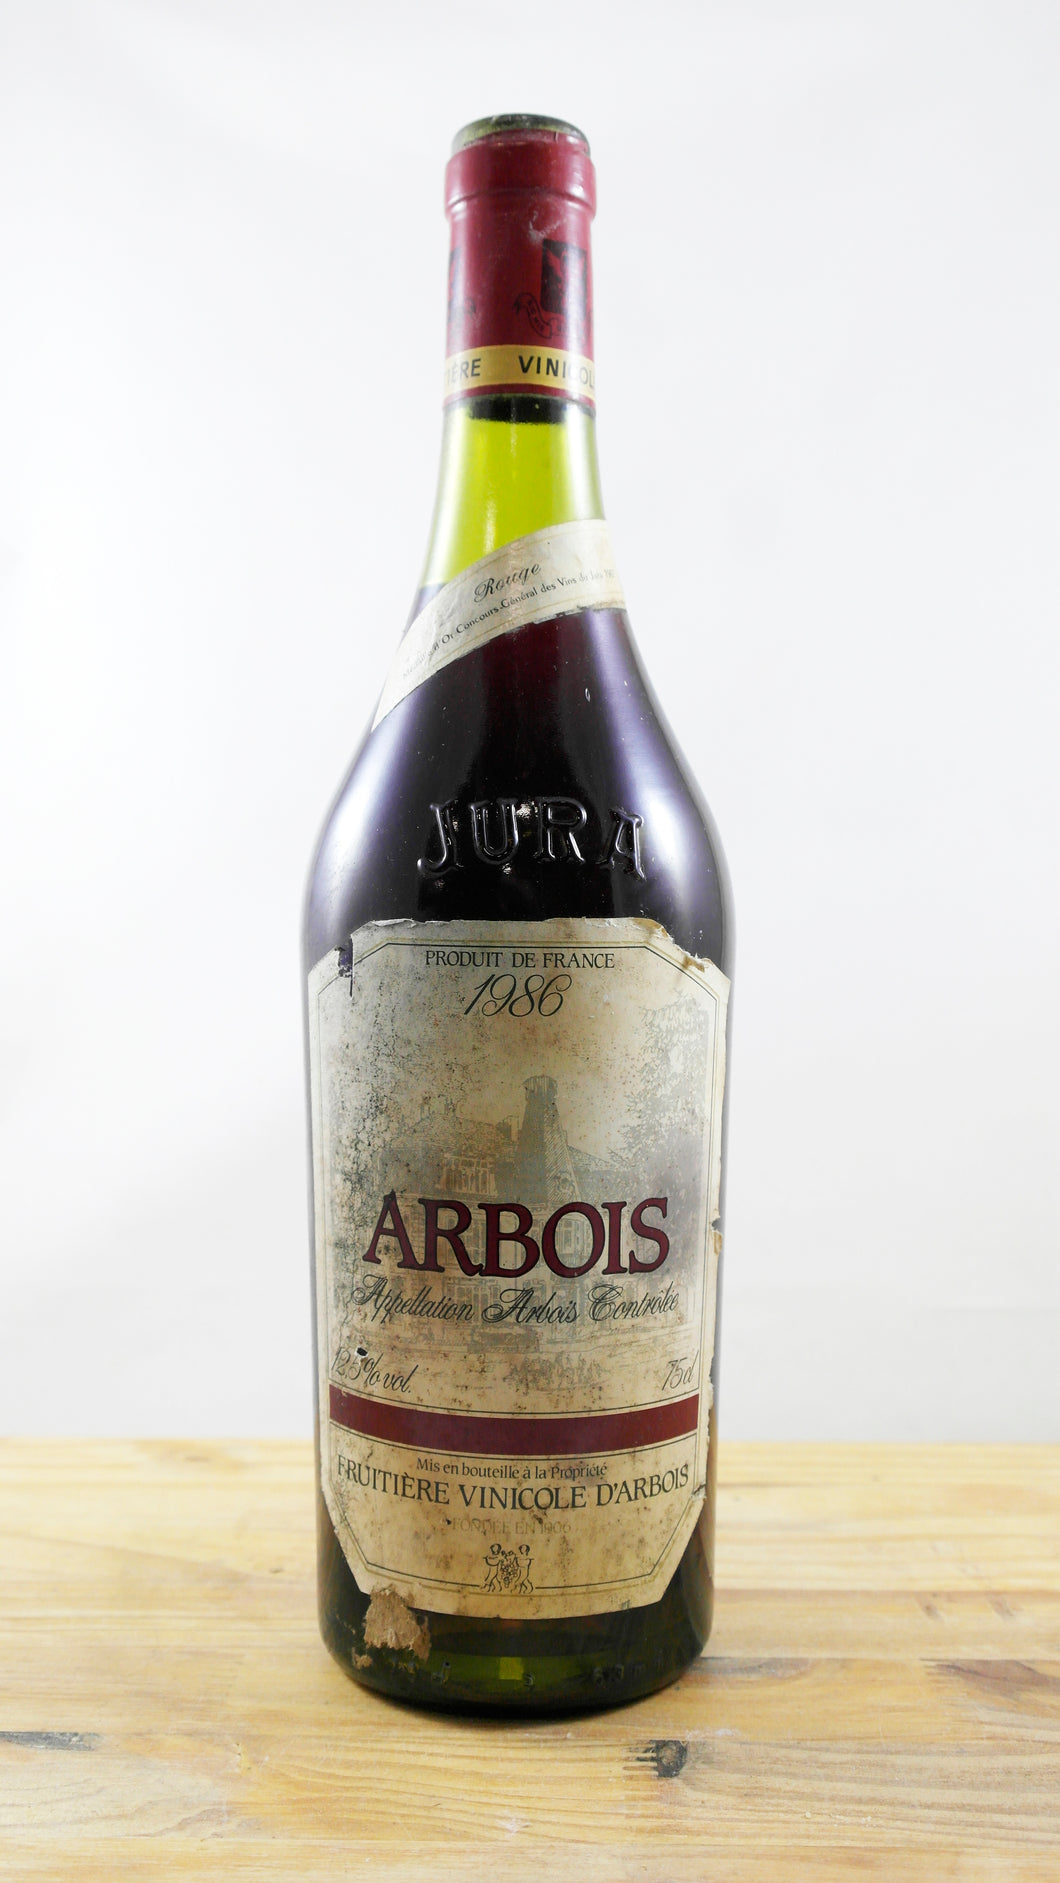 Vin Année 1986 Arbois Fruitière Vinicole d'Arbois